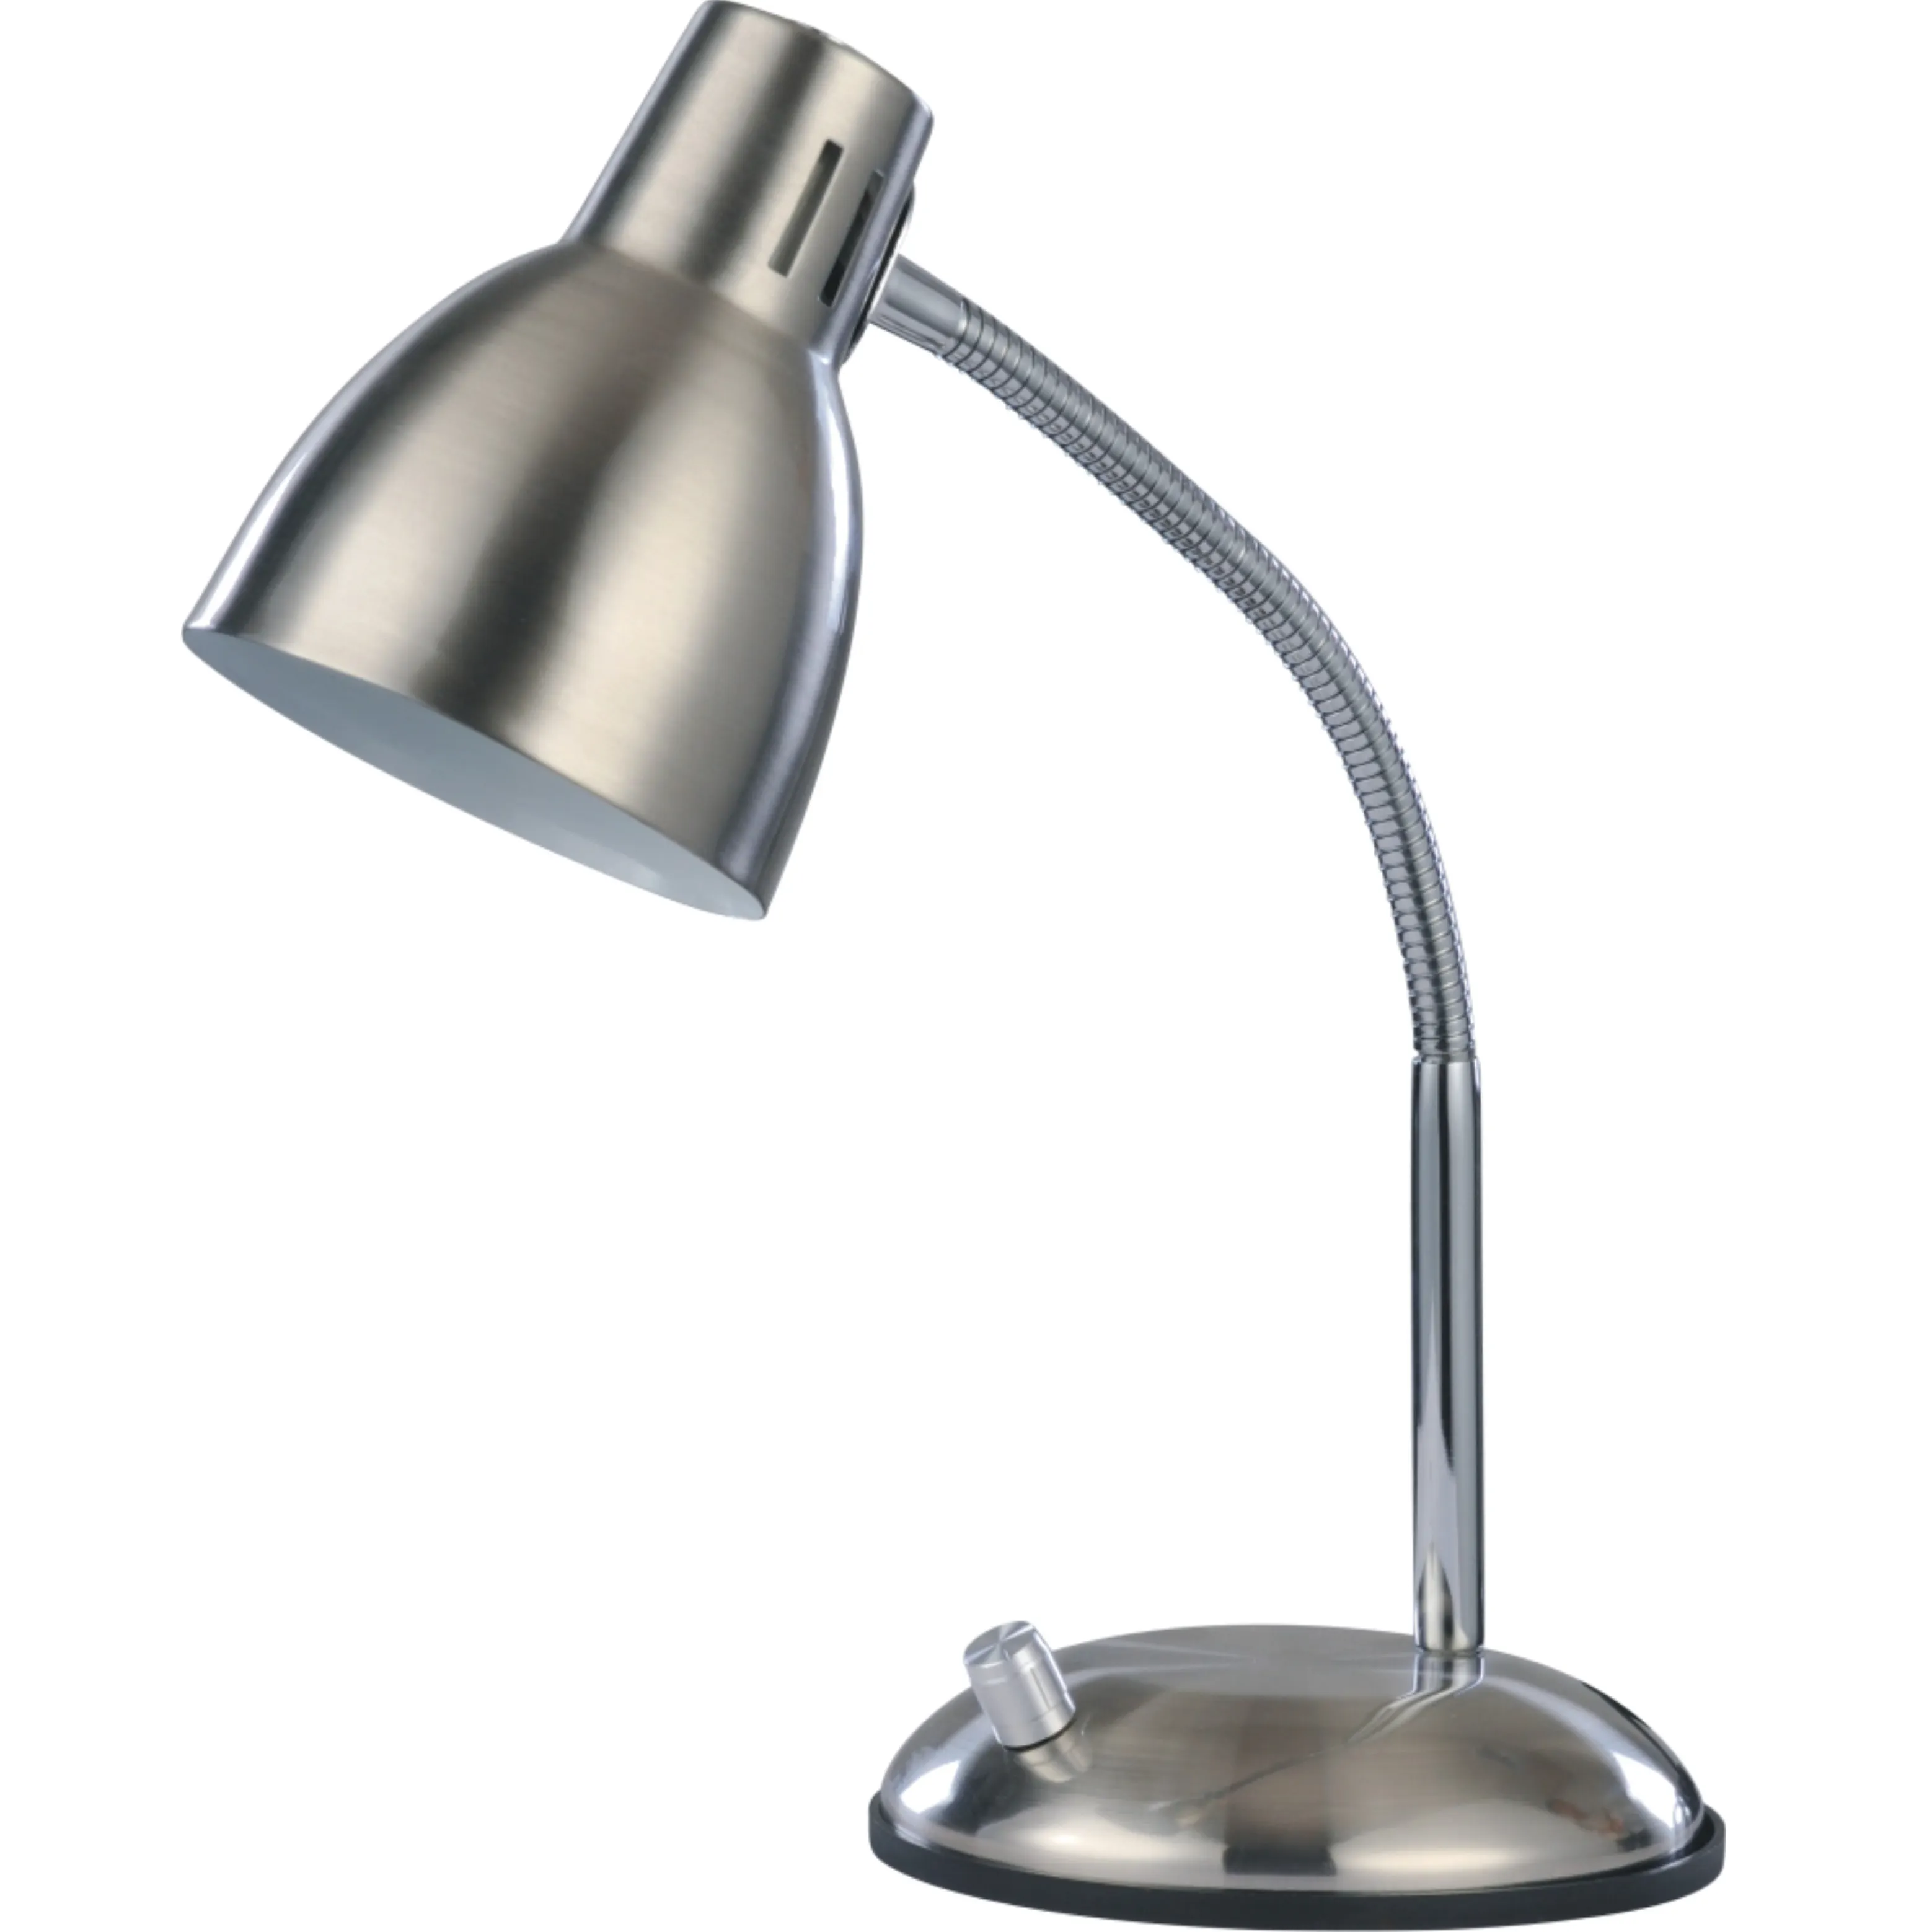 SML-Lámpara Led de mesa de estilo Retro Industrial, ángulo ajustable, para sala de estar, lectura, estudio, E27